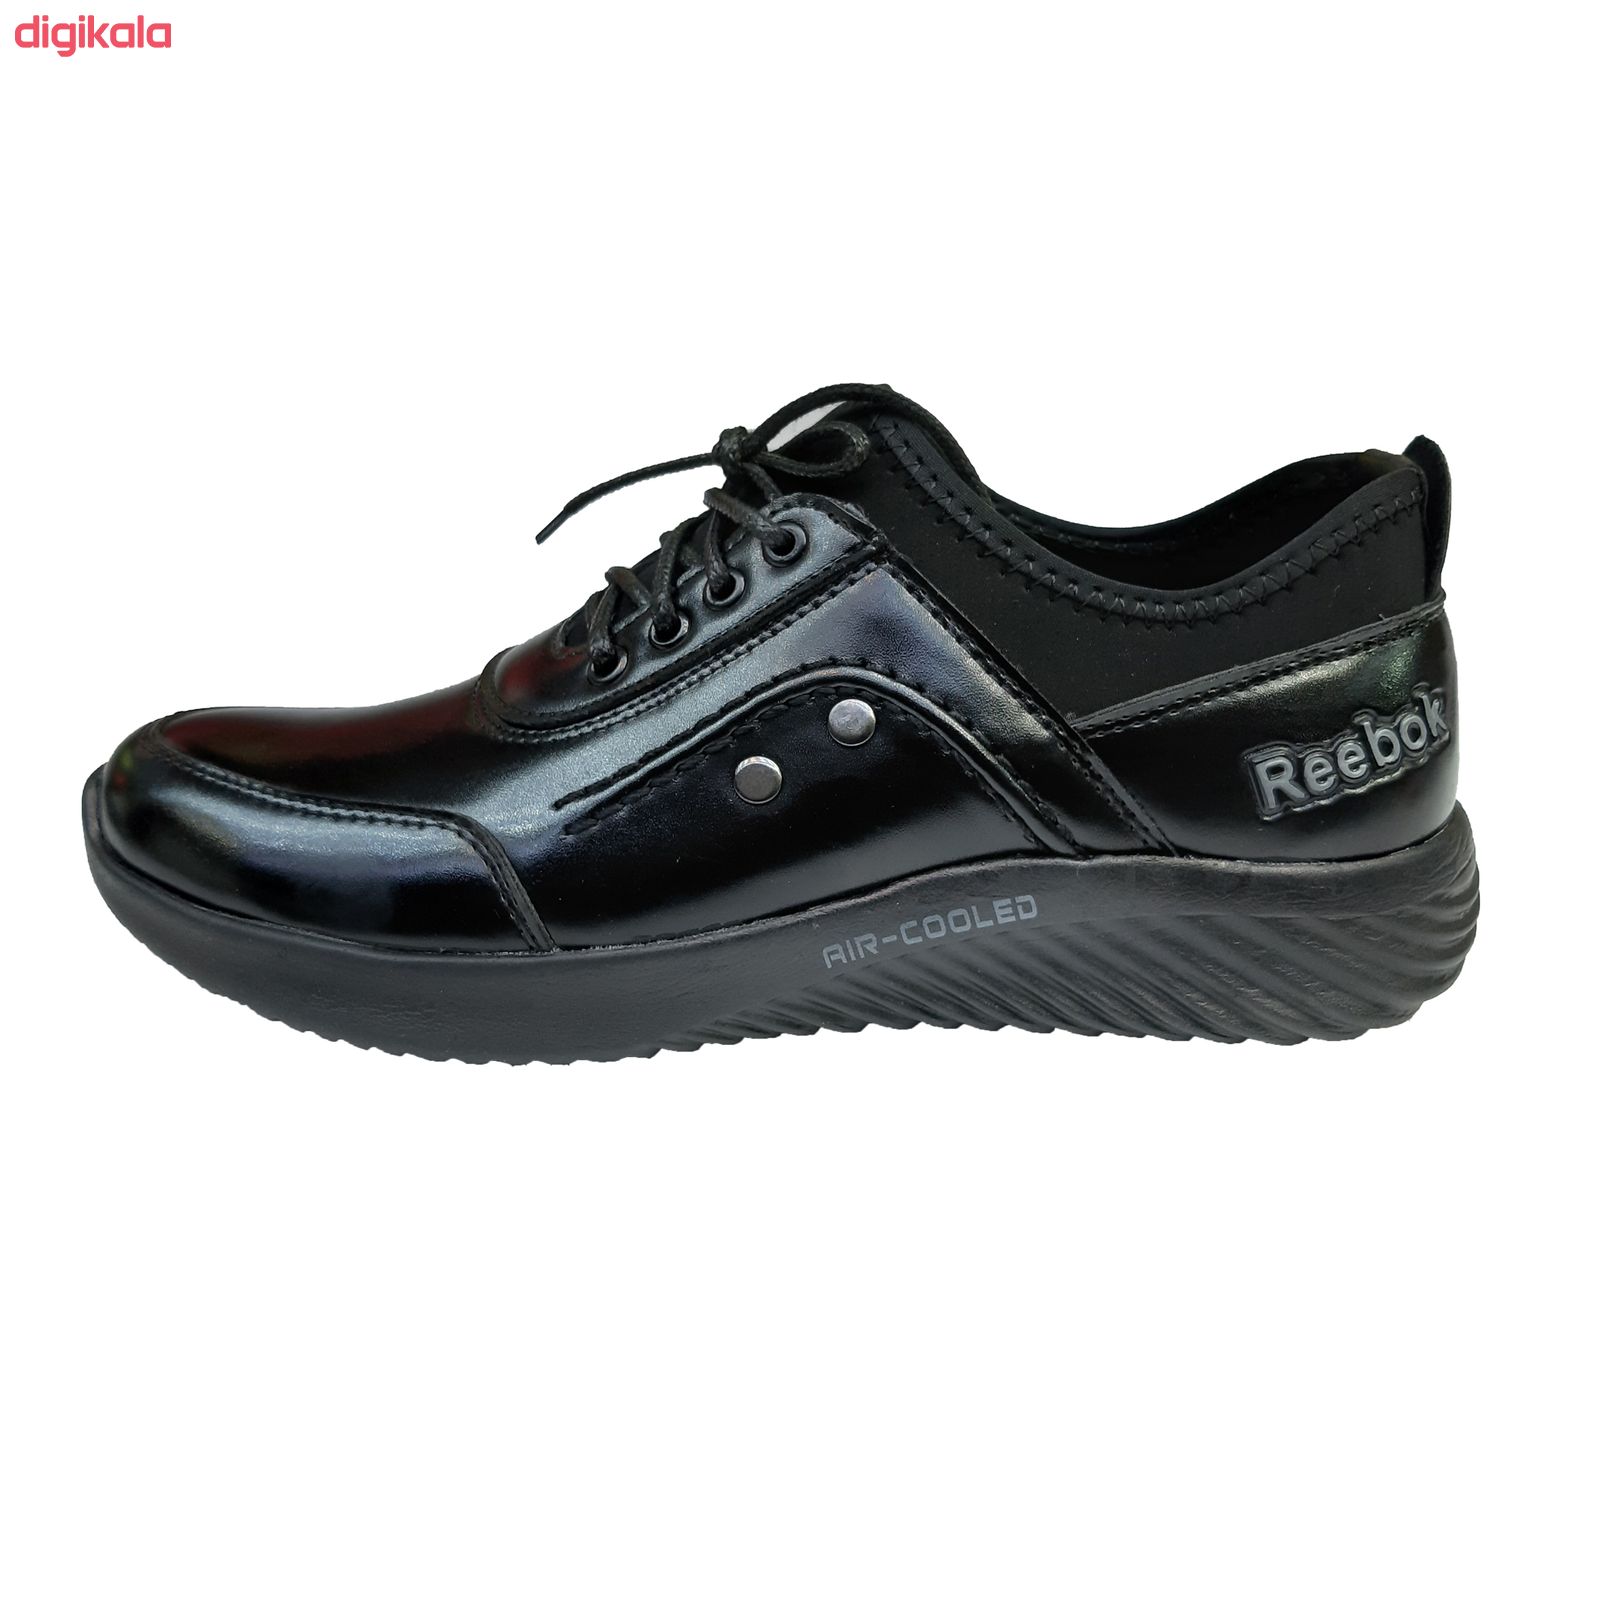  خرید اینترنتی با تخفیف ویژه  کفش طبی مردانه مدل F 965